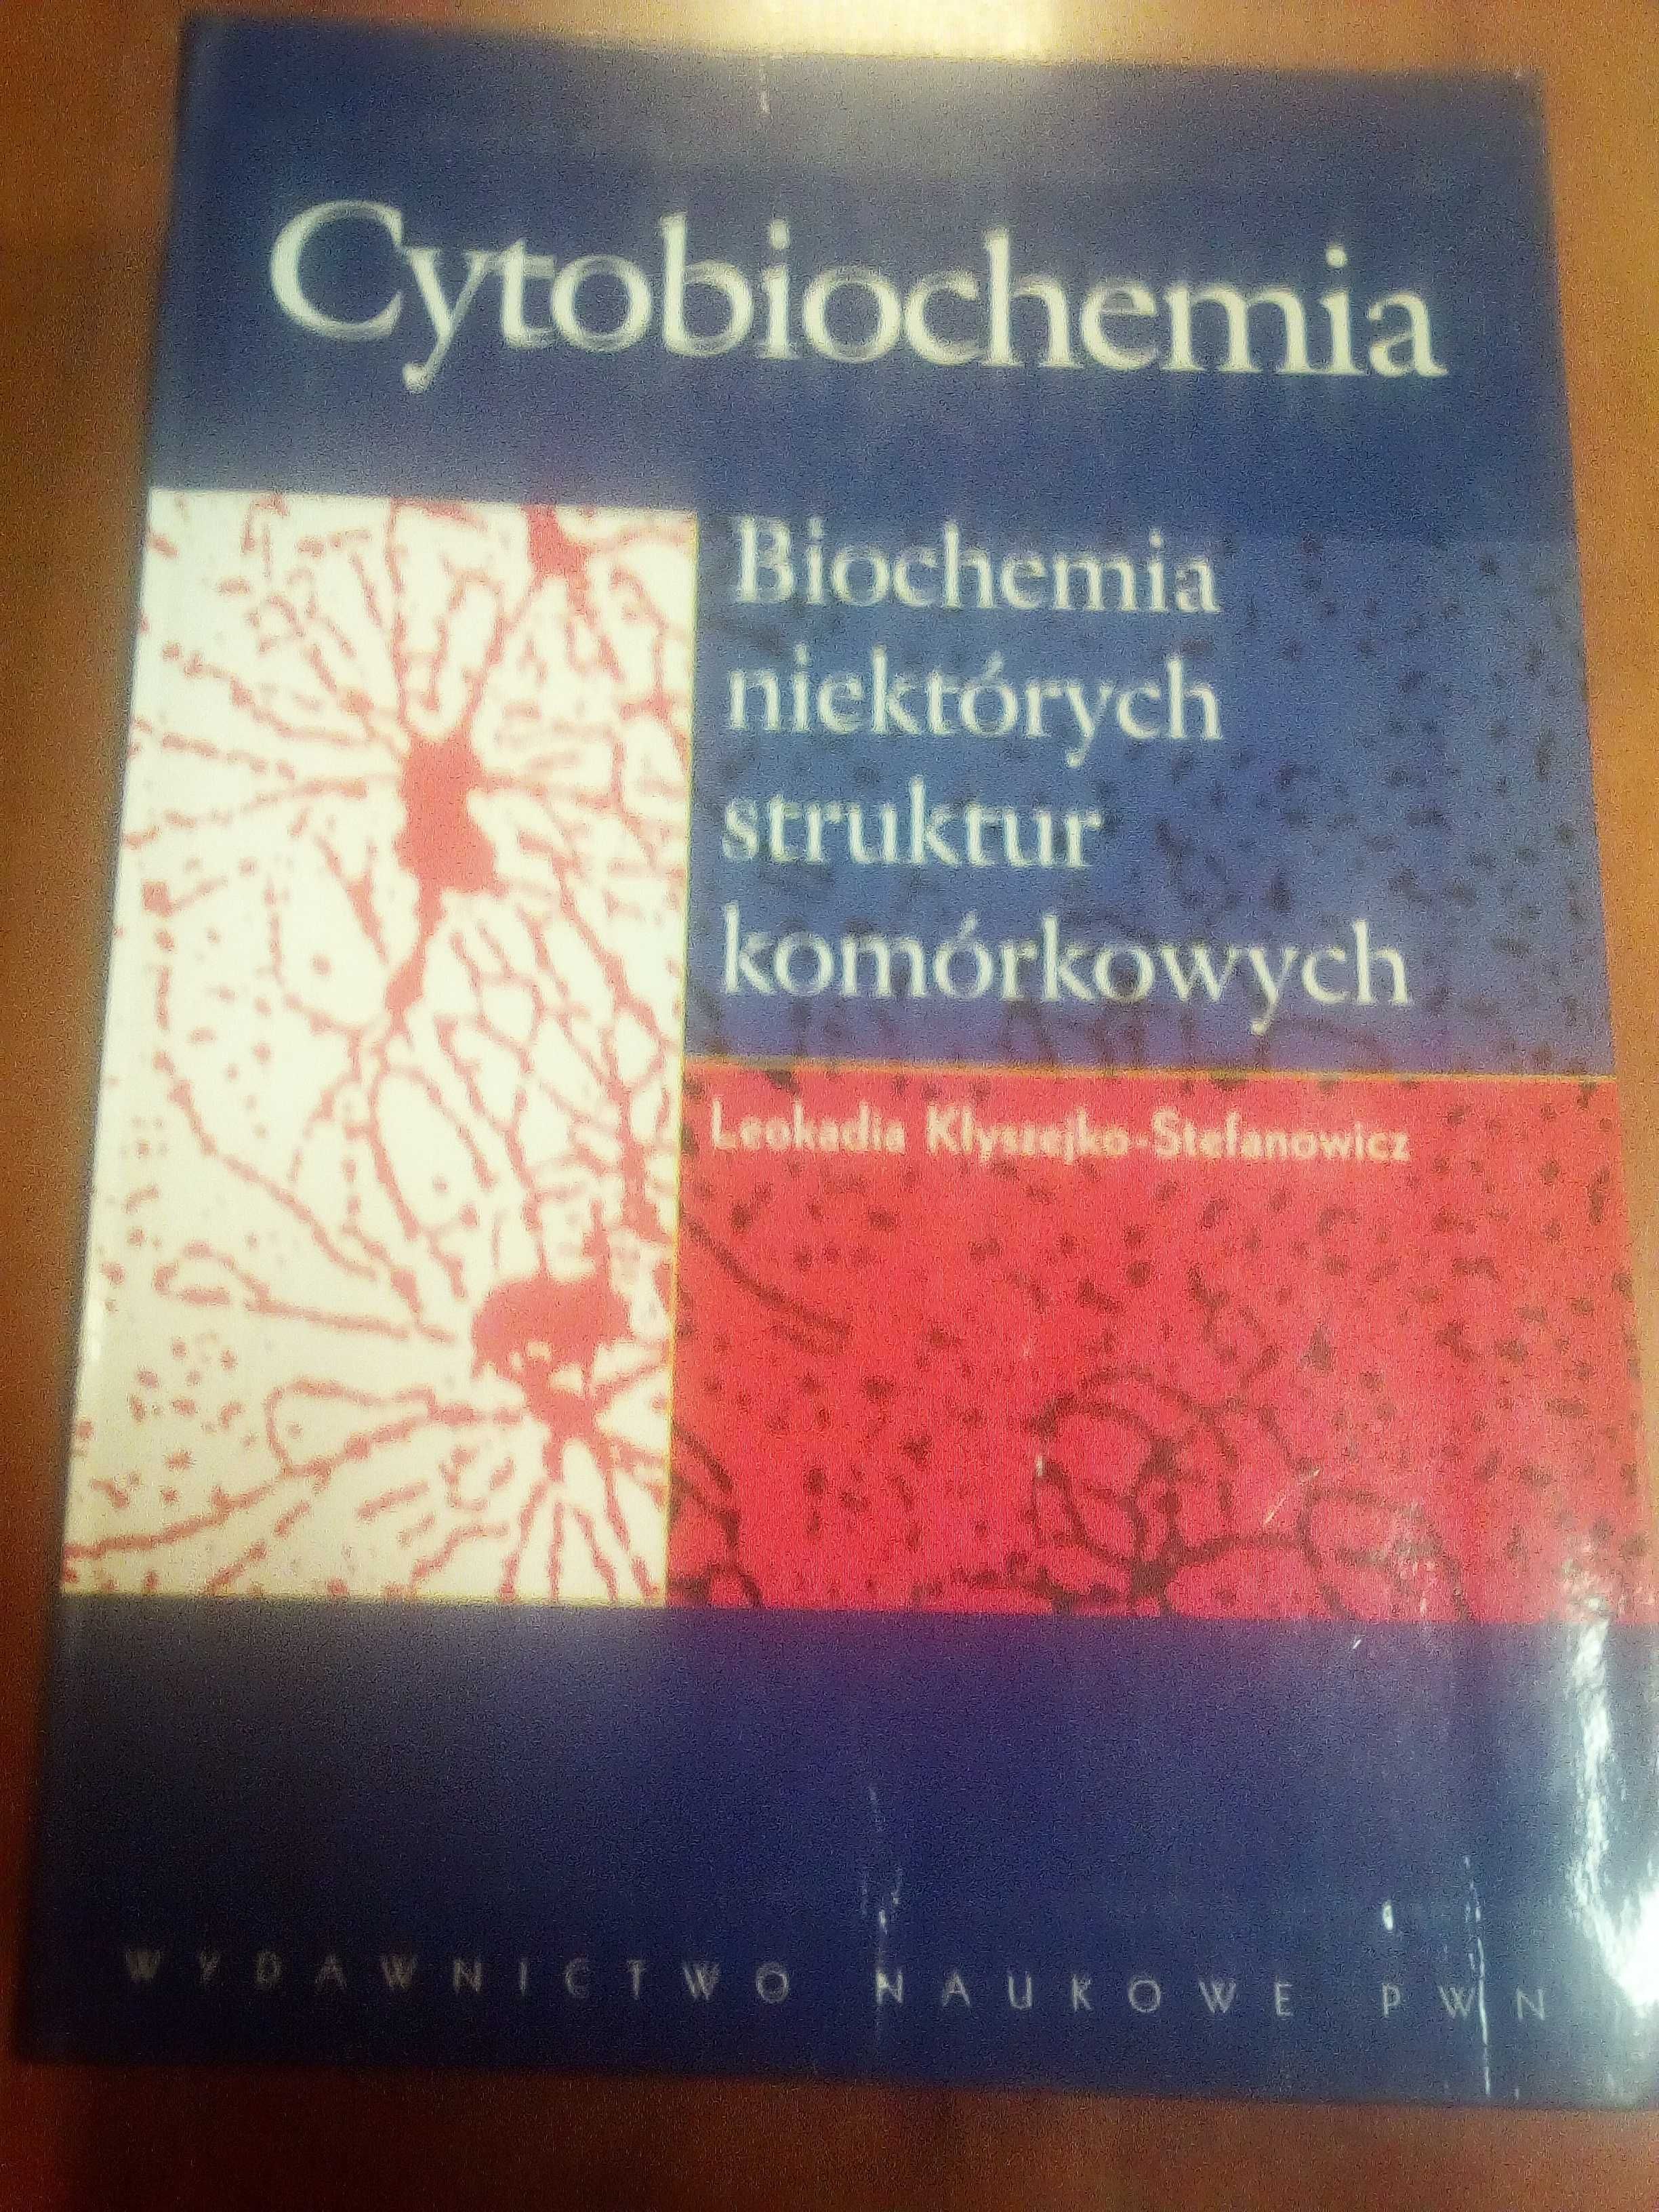 Cytobiochemia, Leokadia Kłyszejko-Stefanowicz